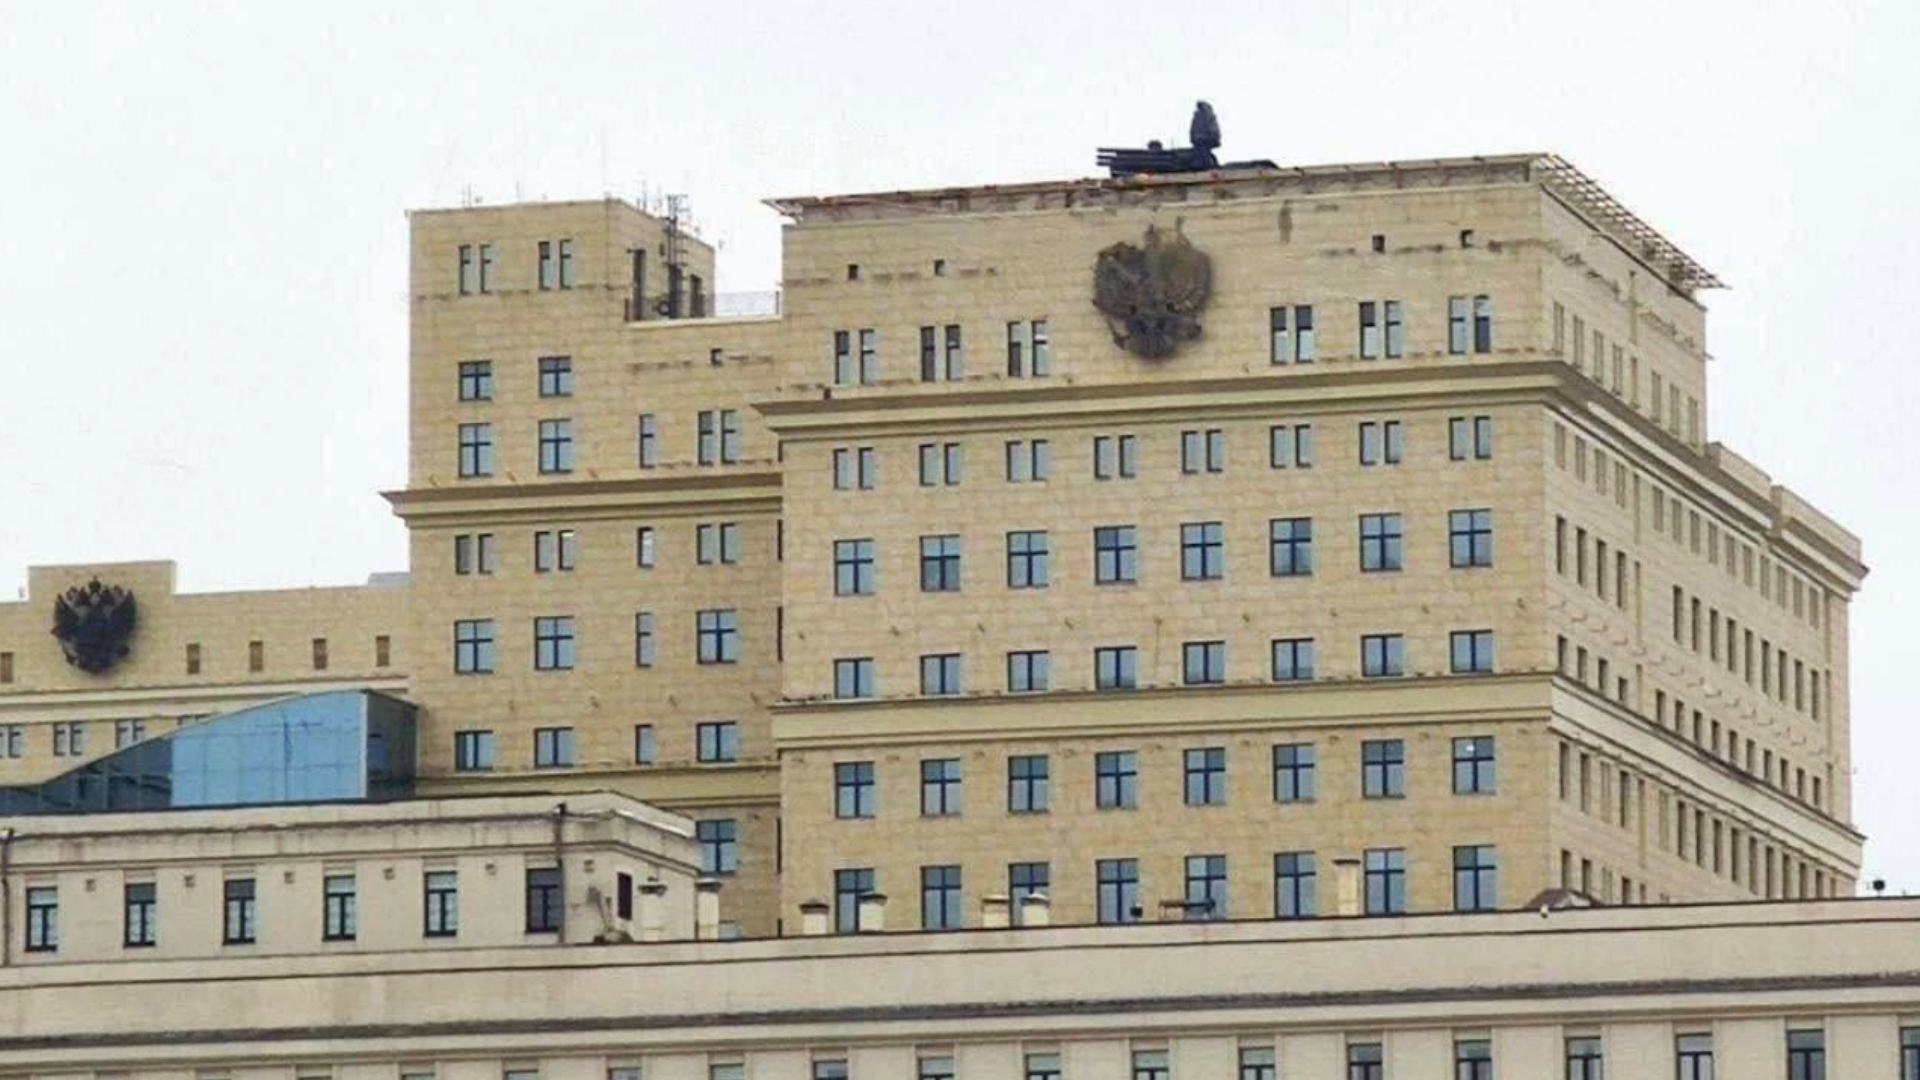 El sistema Pantsir en el techo del edificio del Ministerio de Defensa en la avenida Frunzenskaya 